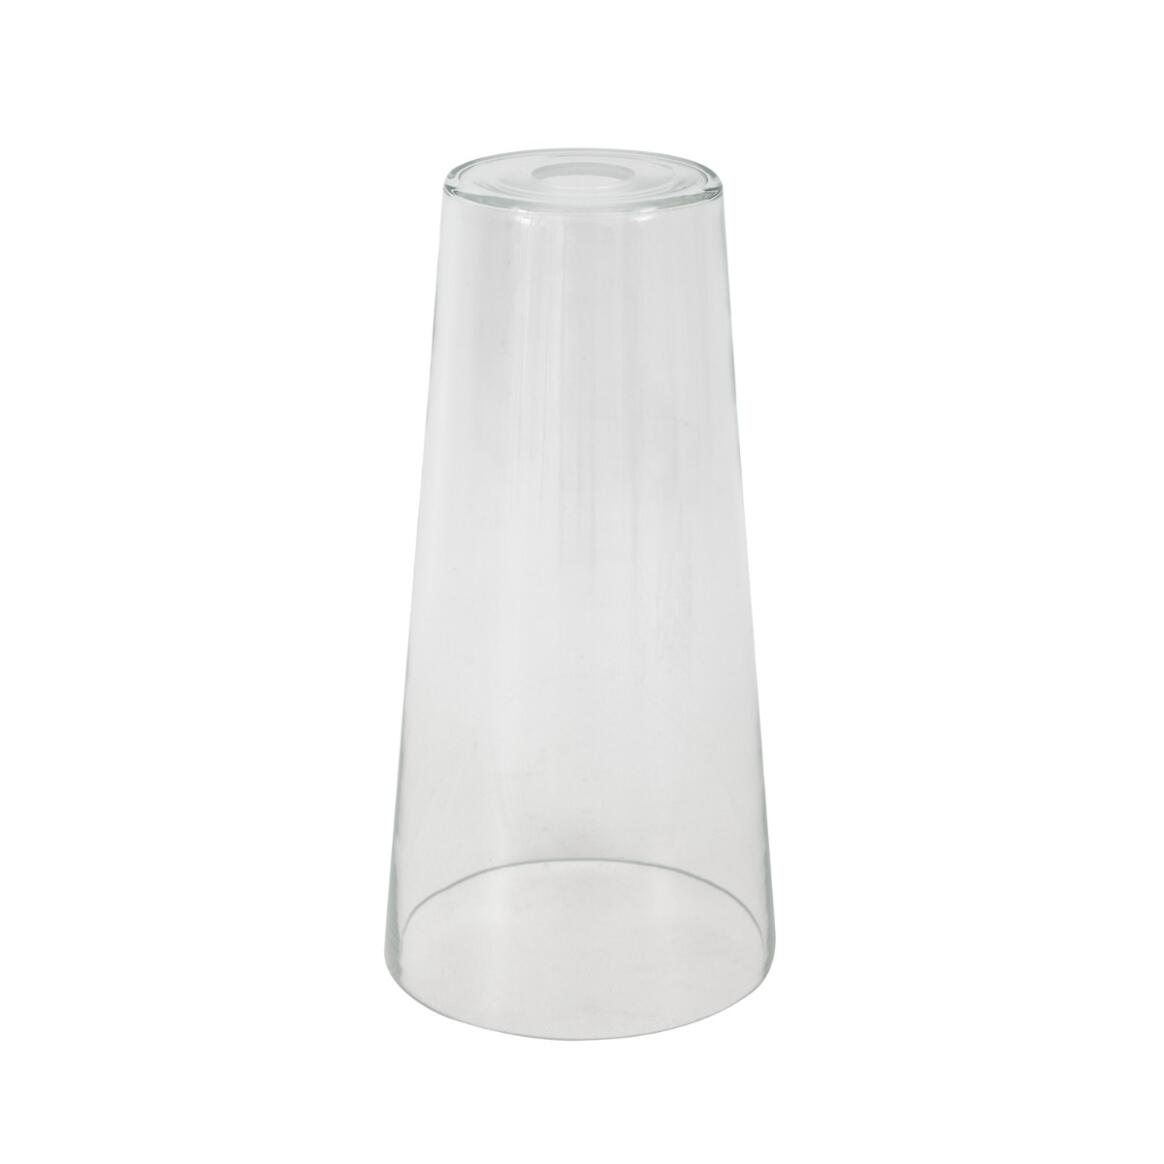 Abat-jour conique en verre transparent 17.5cm main product image